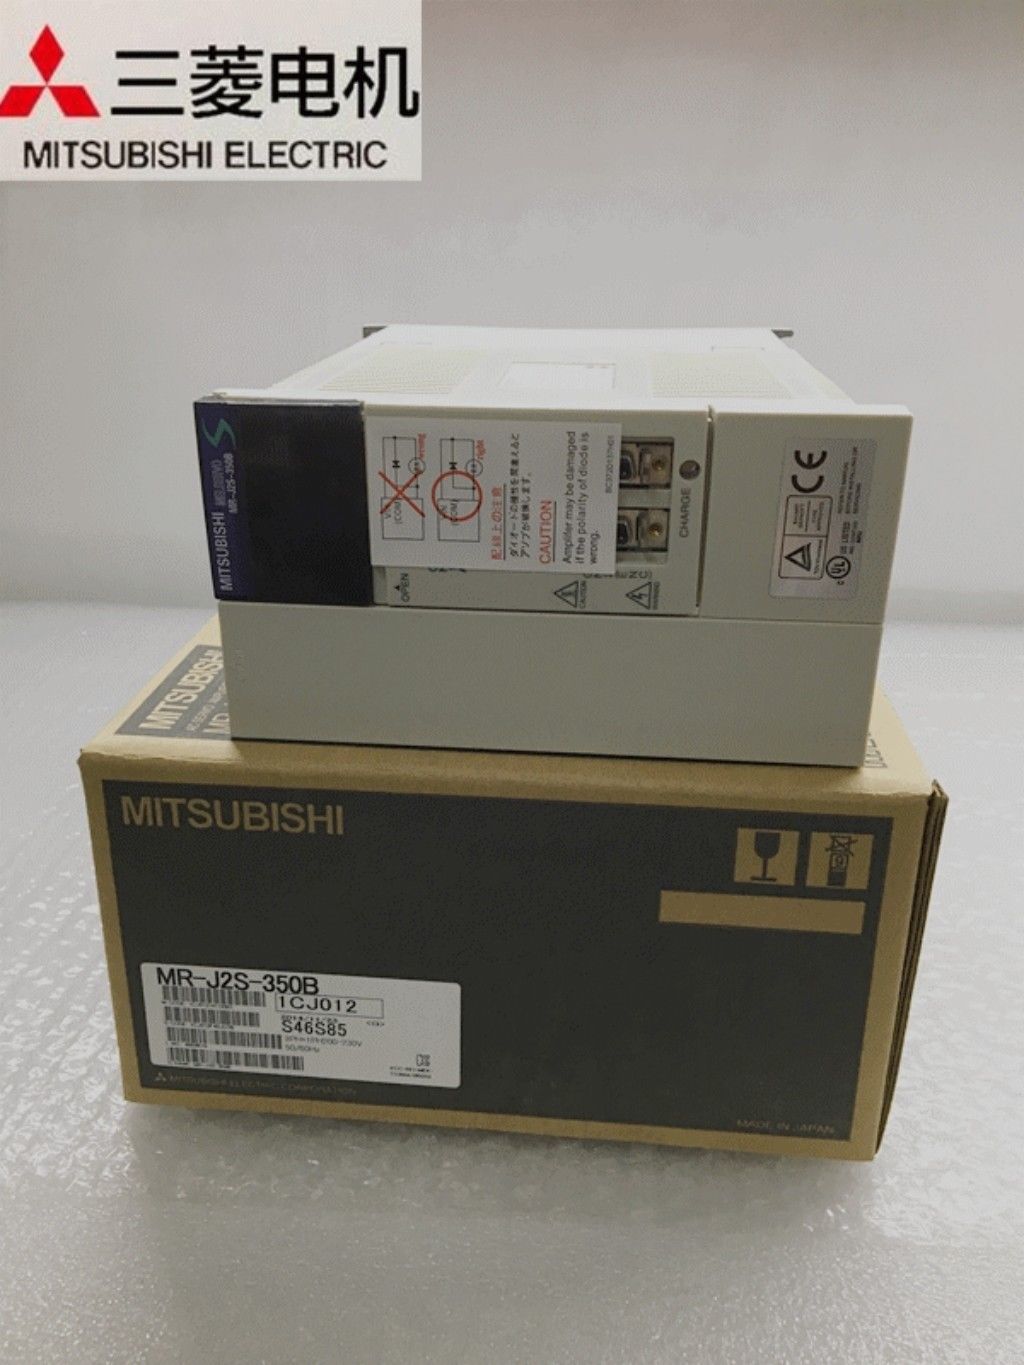 BRAND NEW Mitsubishi Servo Drive MR-J2S-350B in box MRJ2S350B